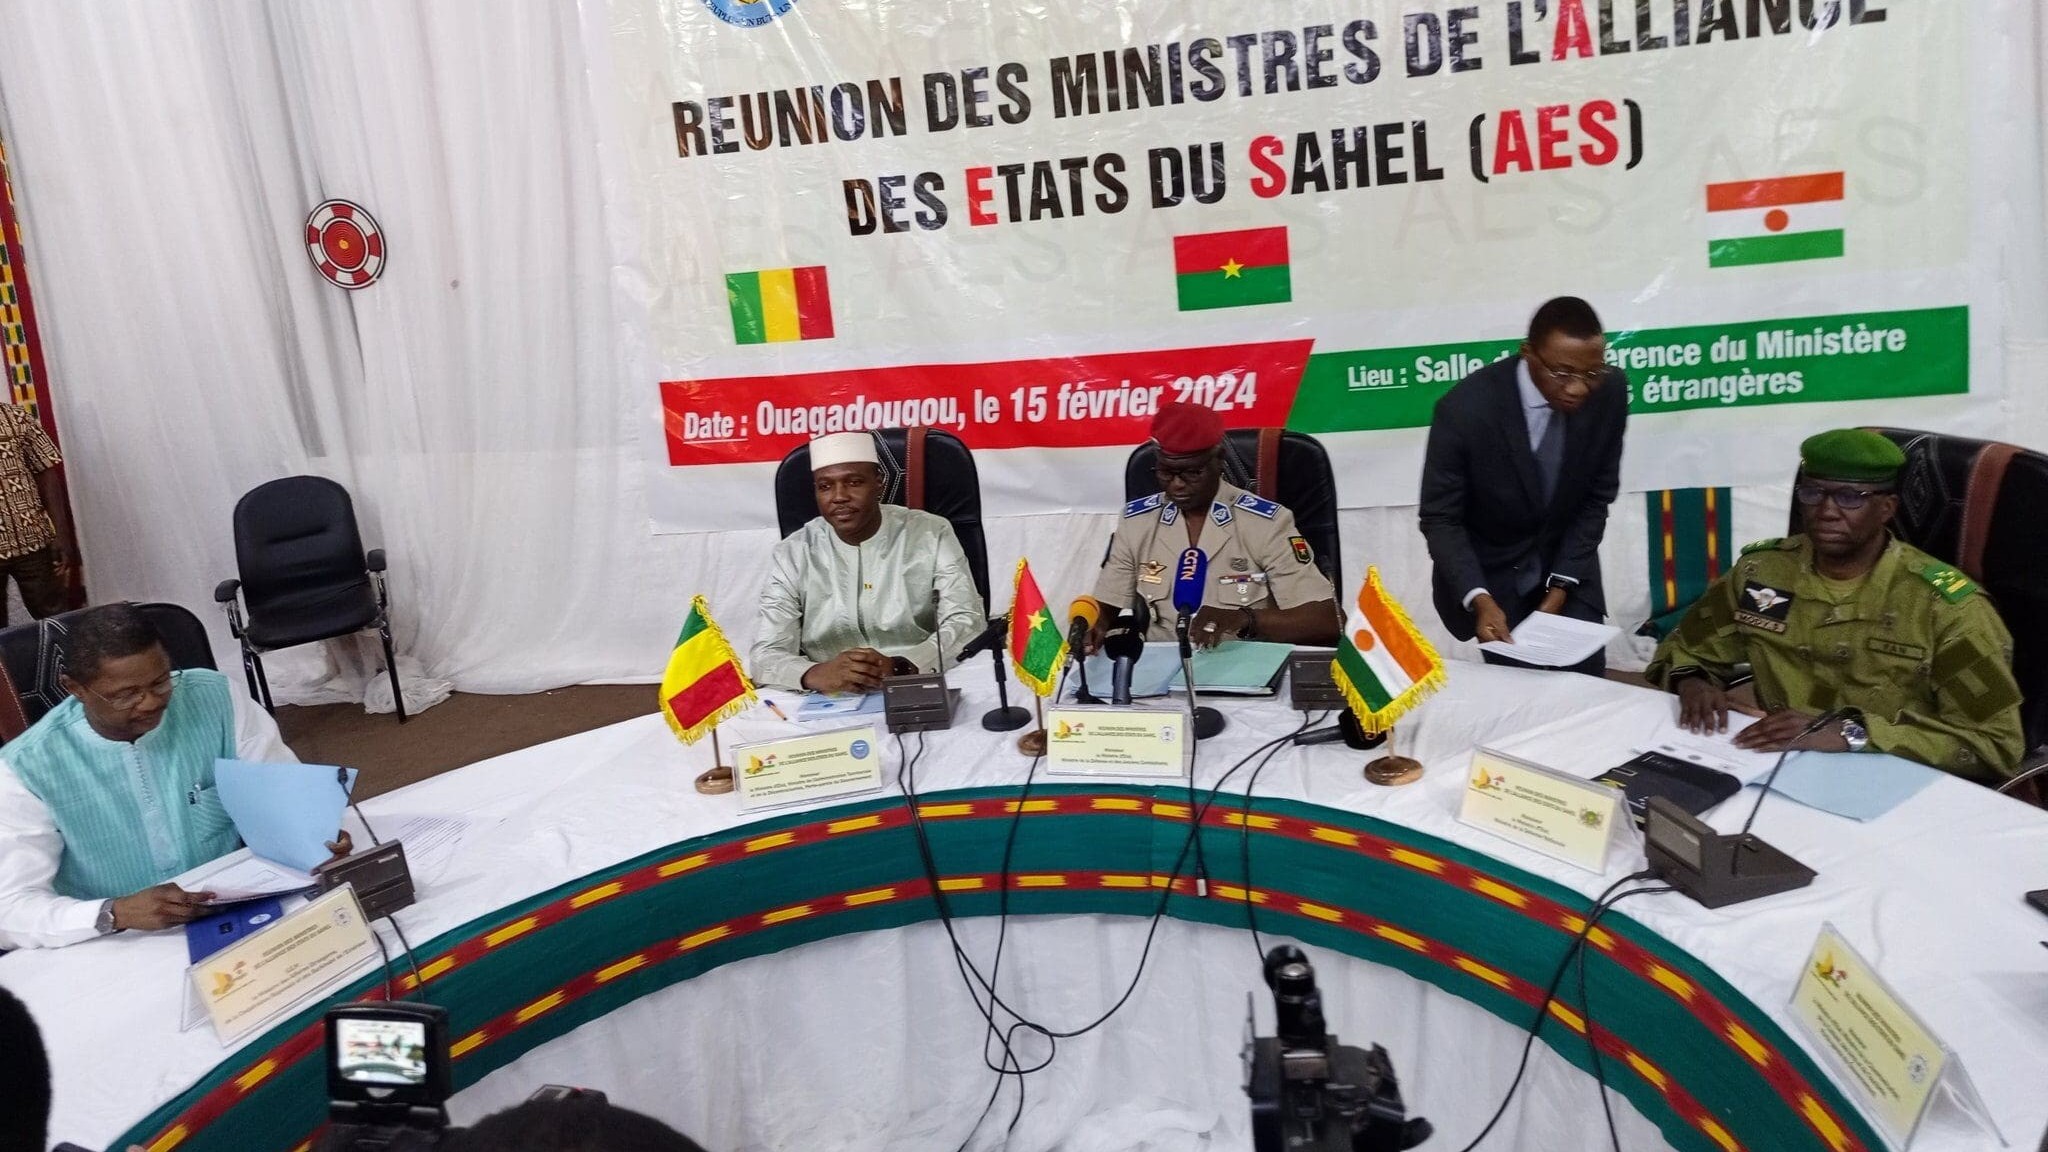 Ba nước Tây Phi hé lộ thông tin về liên minh mới, muốn 'mang niềm vui lớn' cho người dân